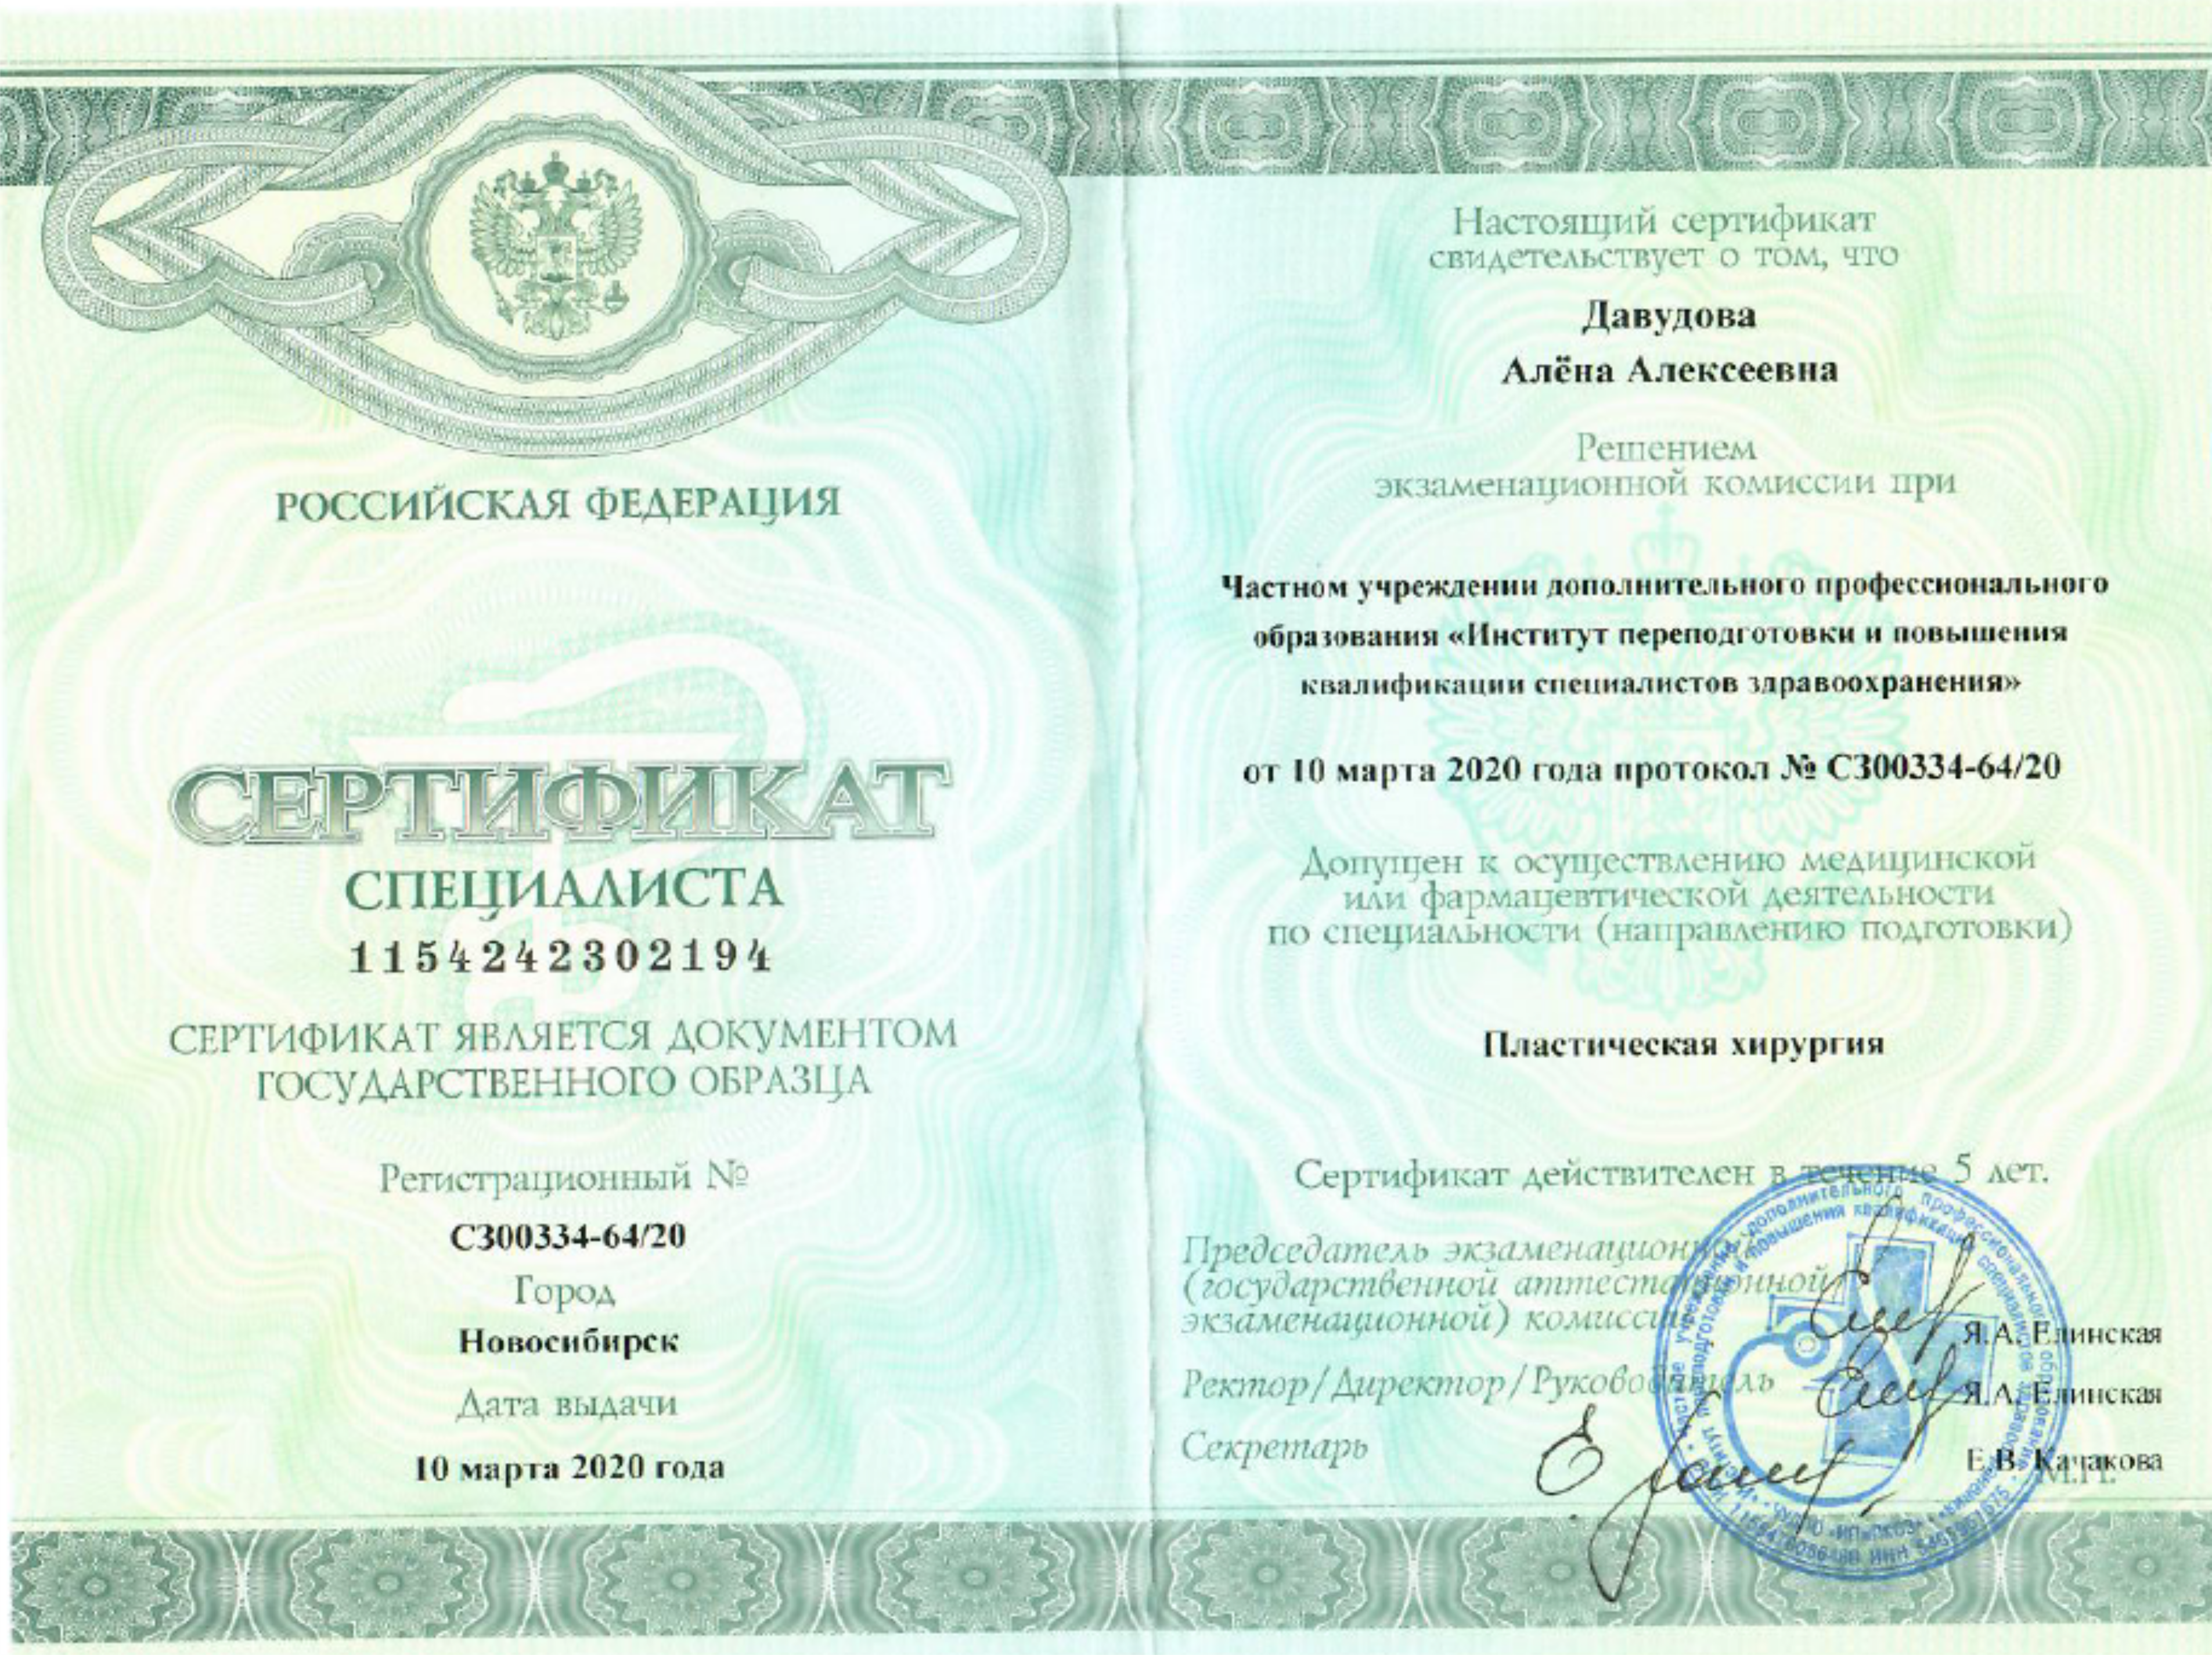 Сертификат специалиста "Пластическая хирургия". 2020 г.